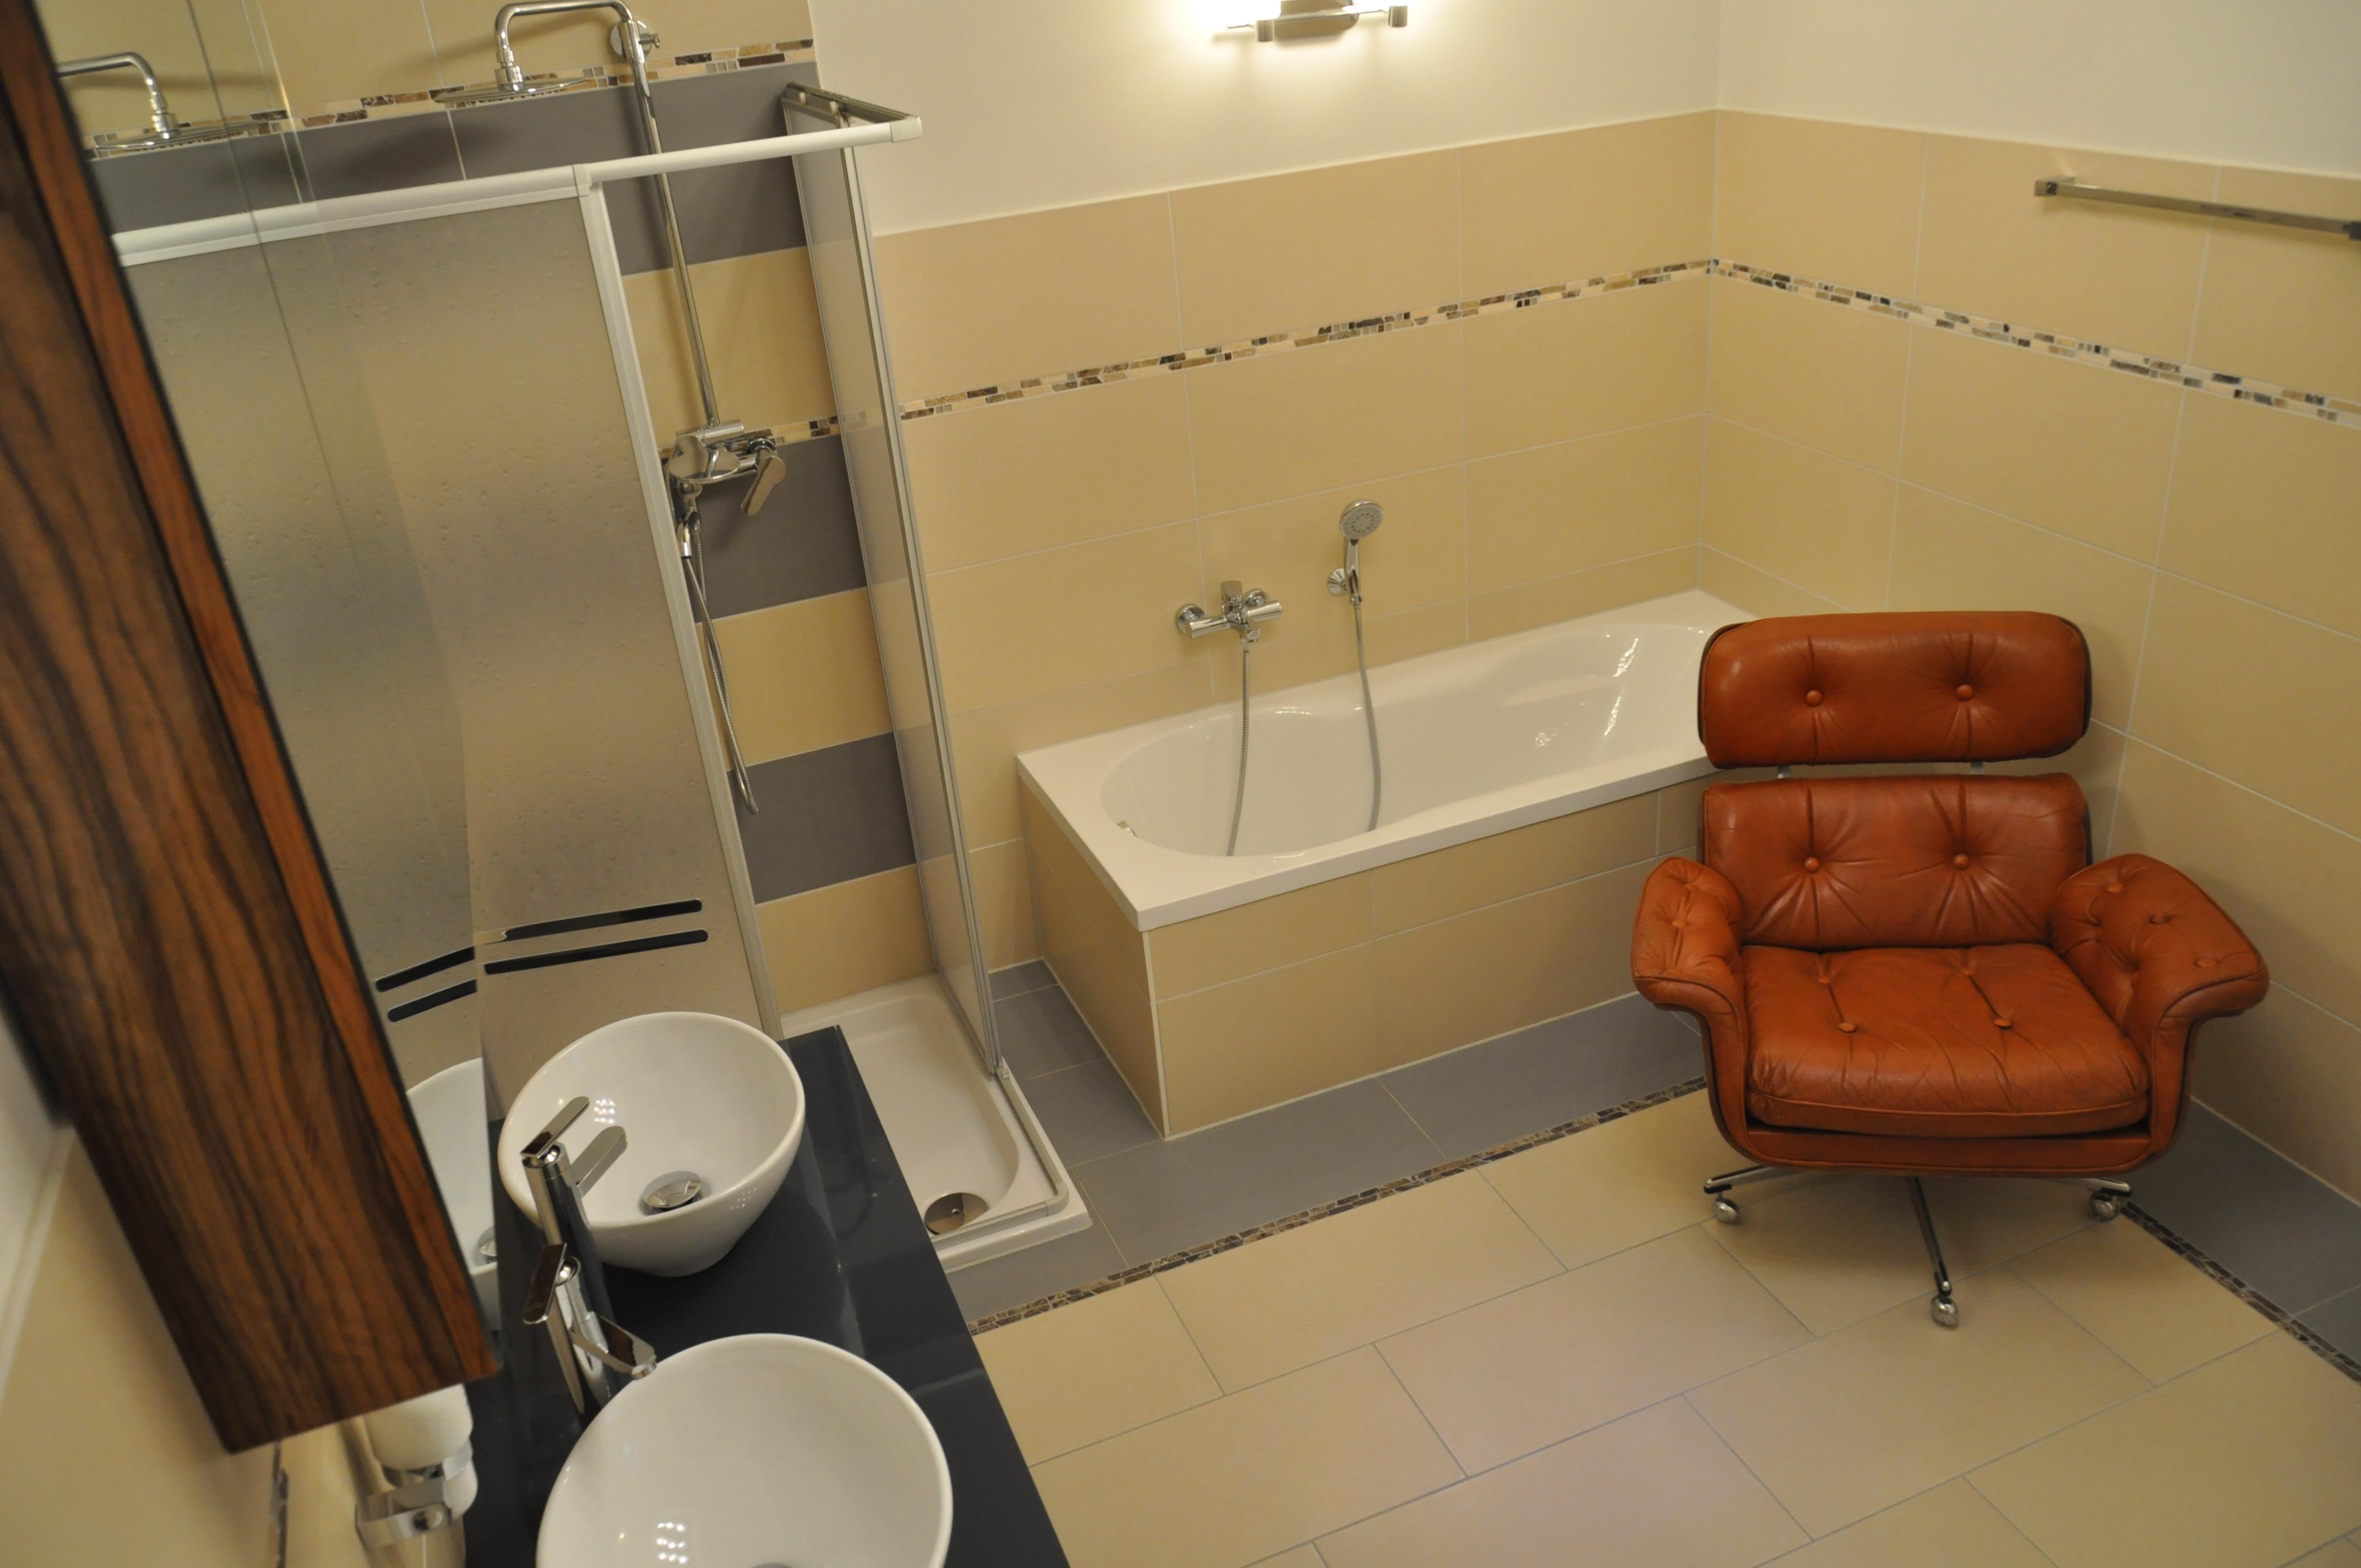 Bad im behaglichen 60 m2 Apartment zu mieten #bad #badezimmer ©Tatjana Adelt